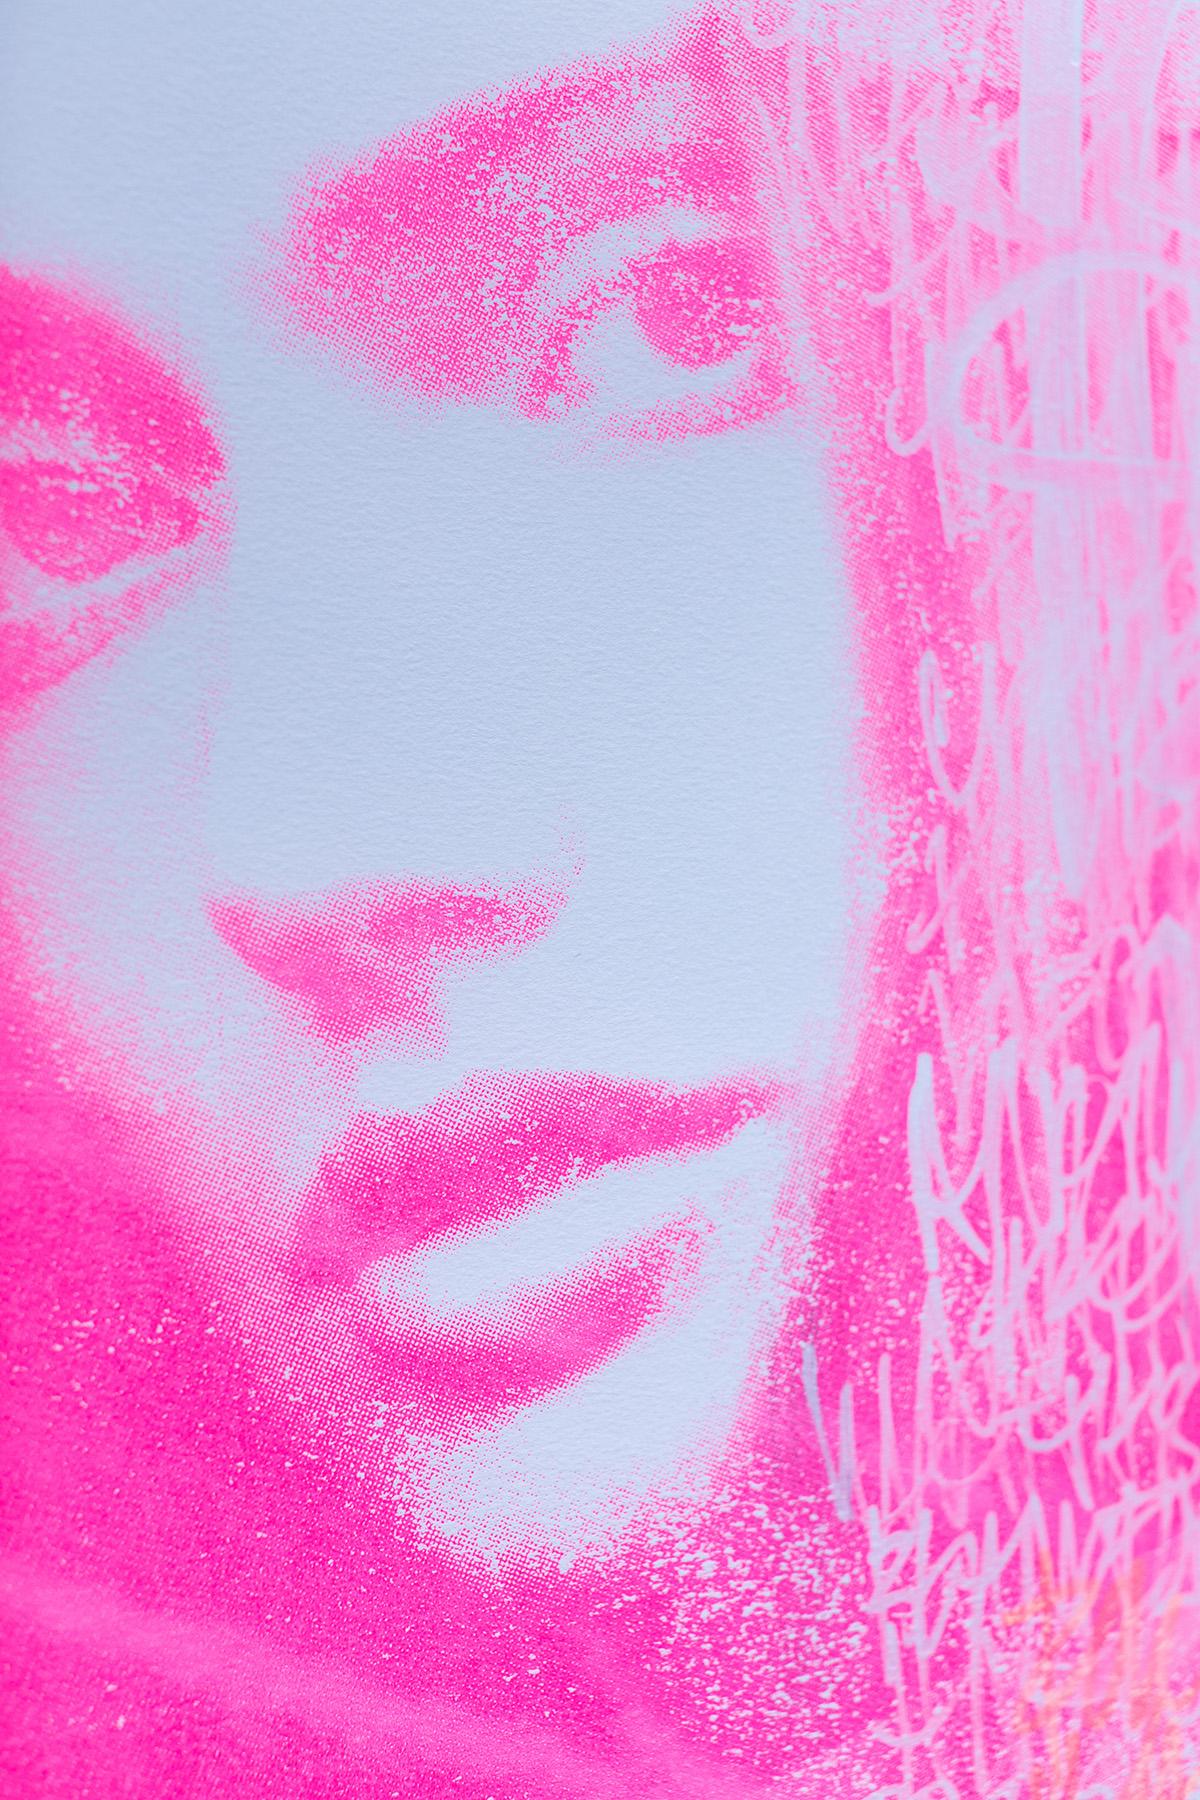 Pop Art, Pink Pop Art, Portrait Artwork-Sparkling Rosé - Painting by Addison Jones